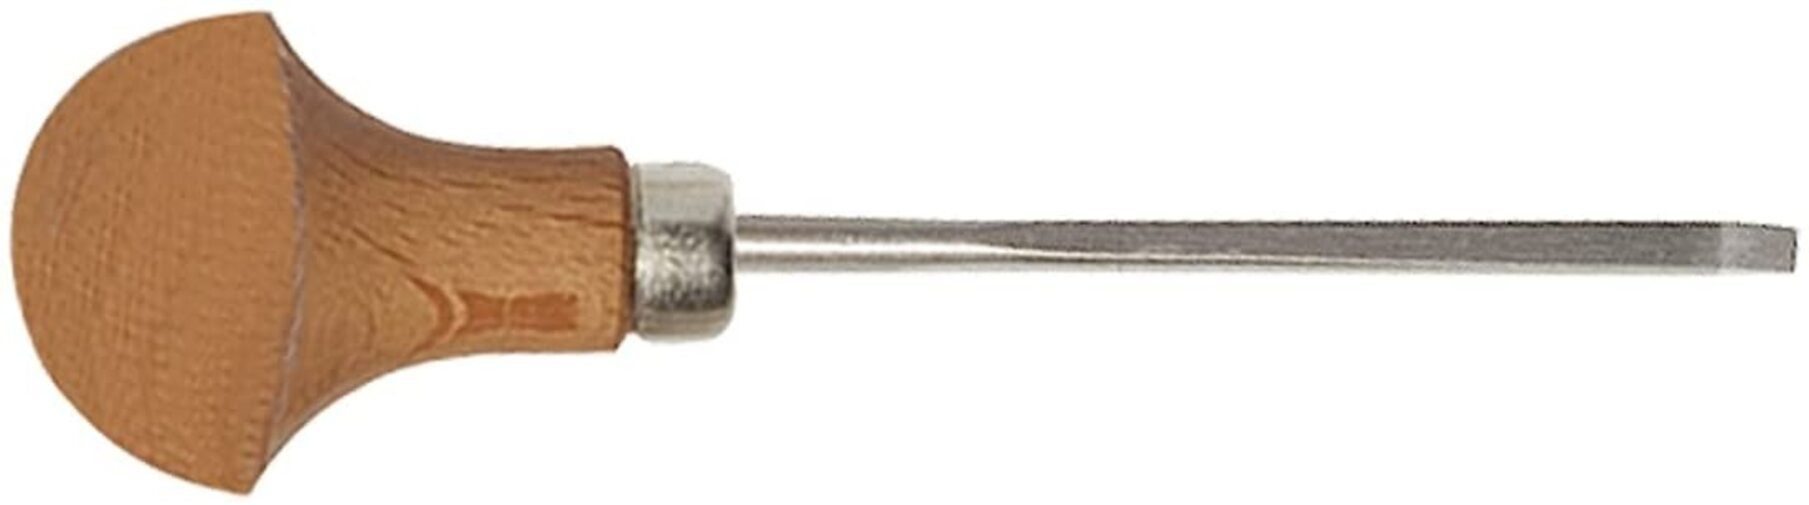 Stubai Stechbeitel STUBAI Micro Stechbeitel Form 1 3 mm